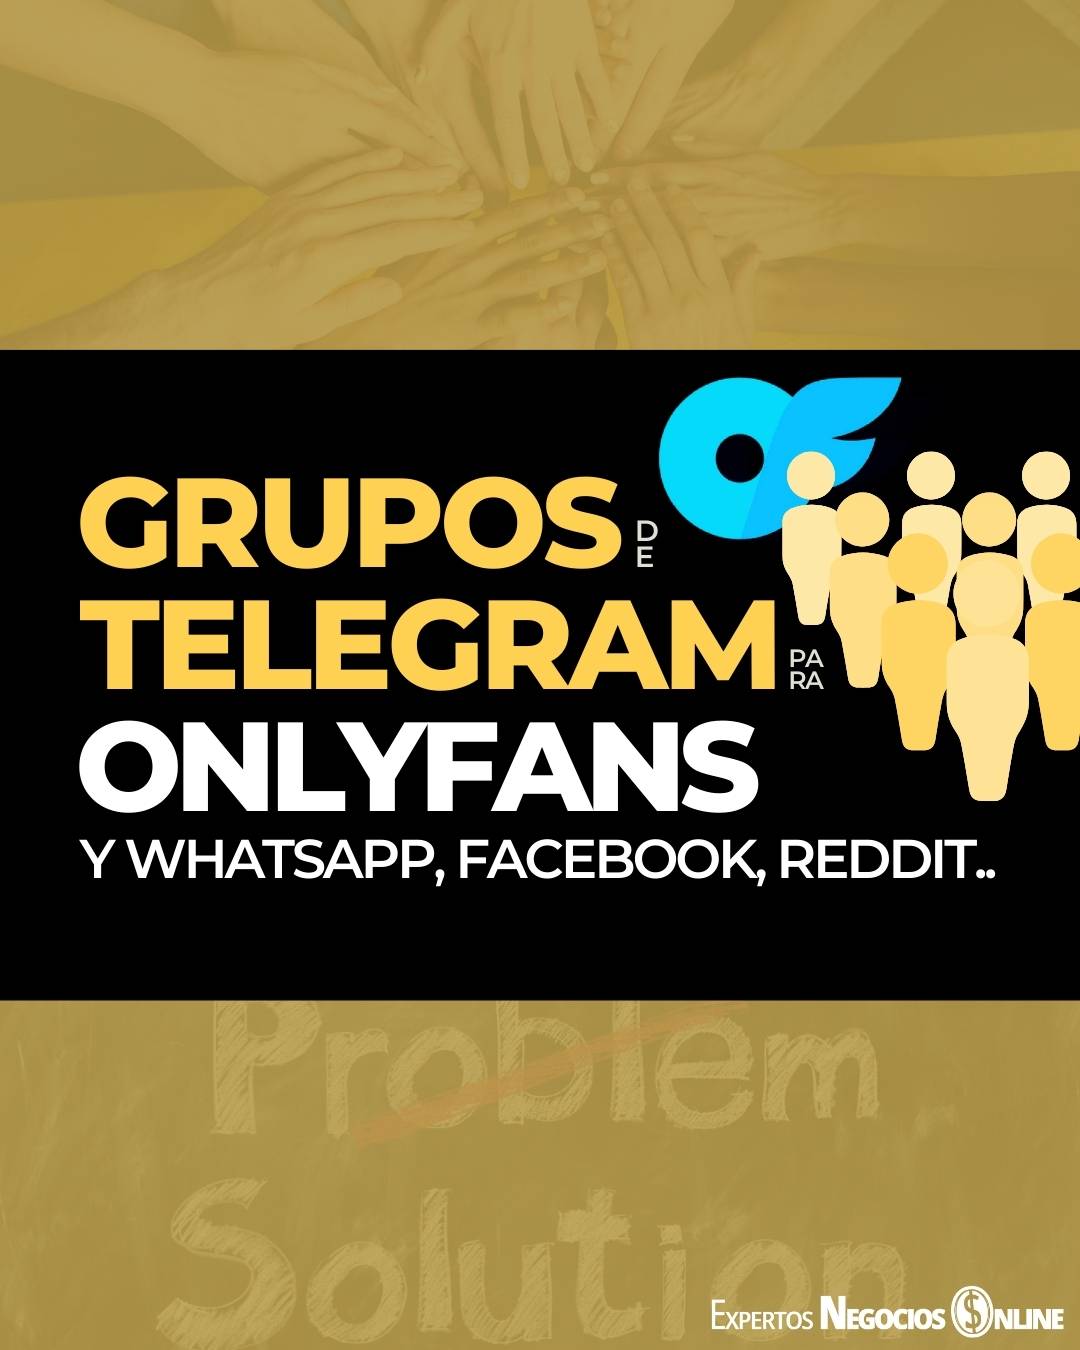 Grupos de onlyfans telegram